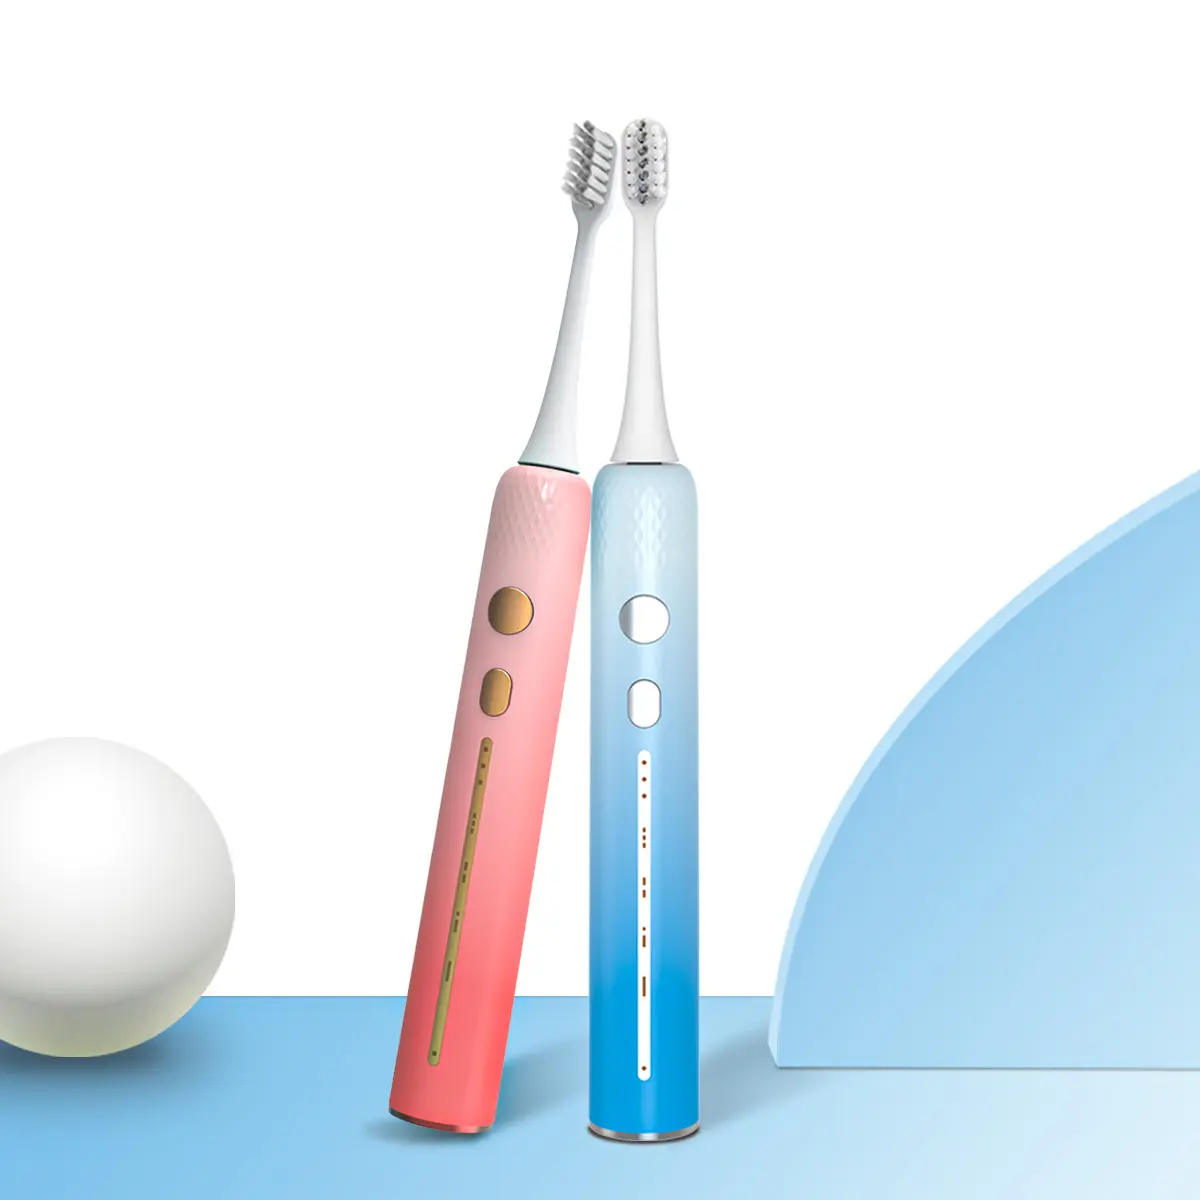 Escova de dentes e dental de samo s810, portátil, sônica